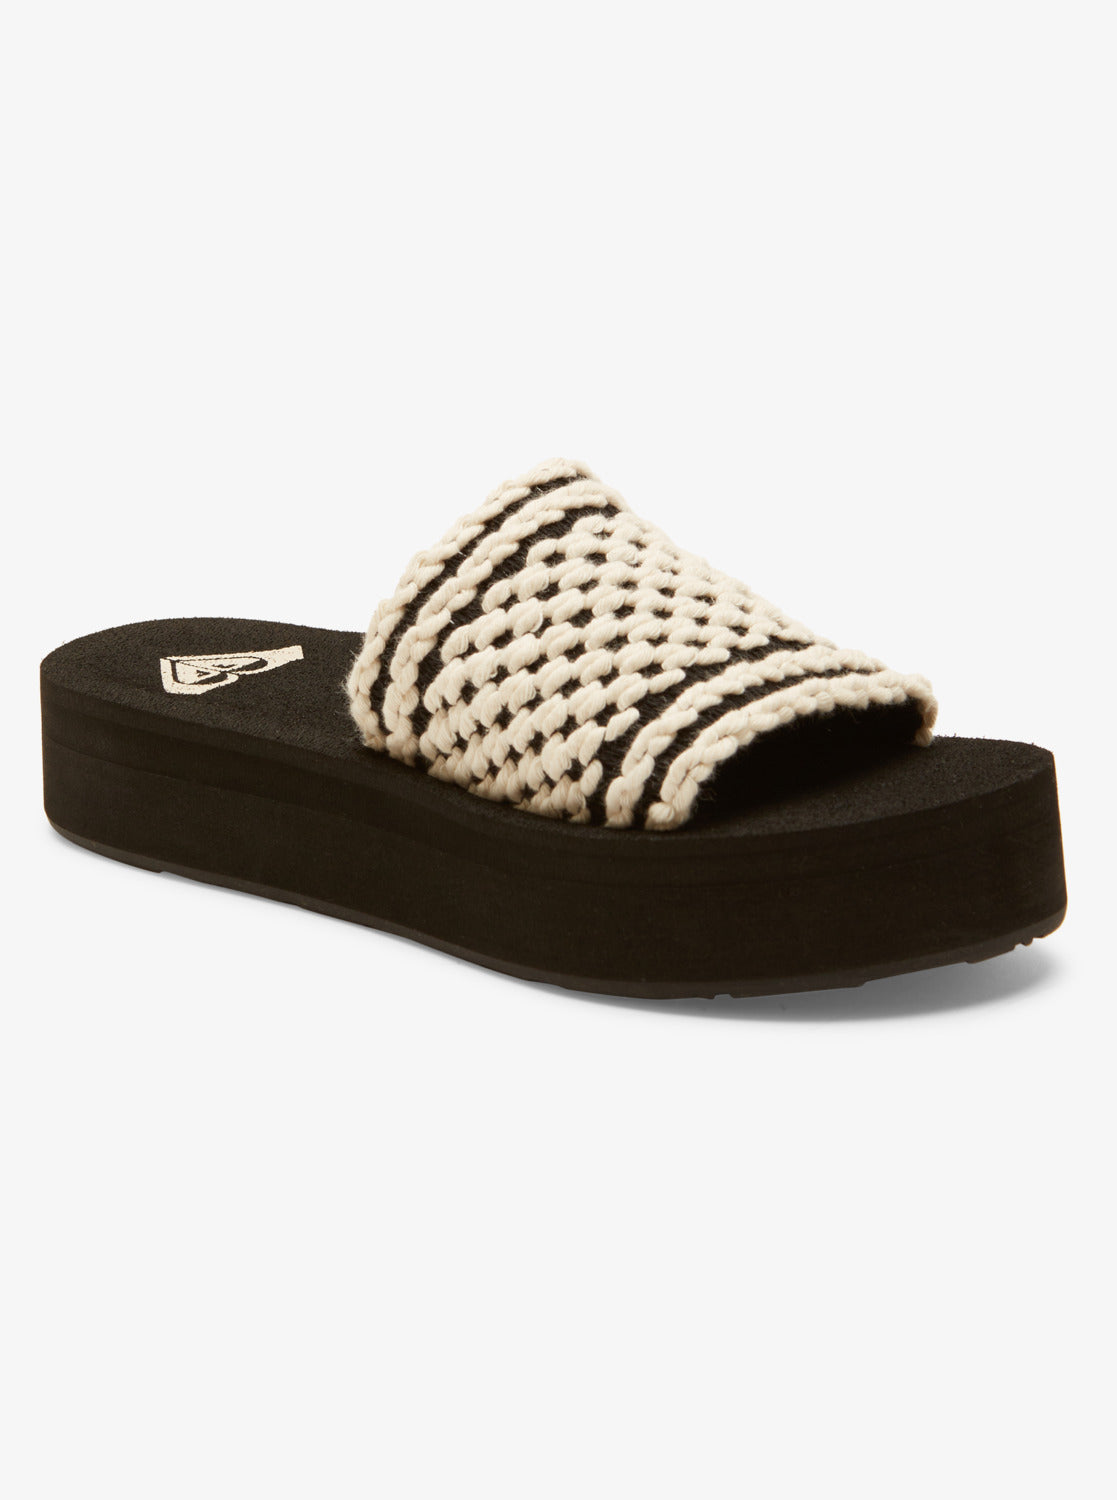 Dayzie Slide Sandals - Black/White